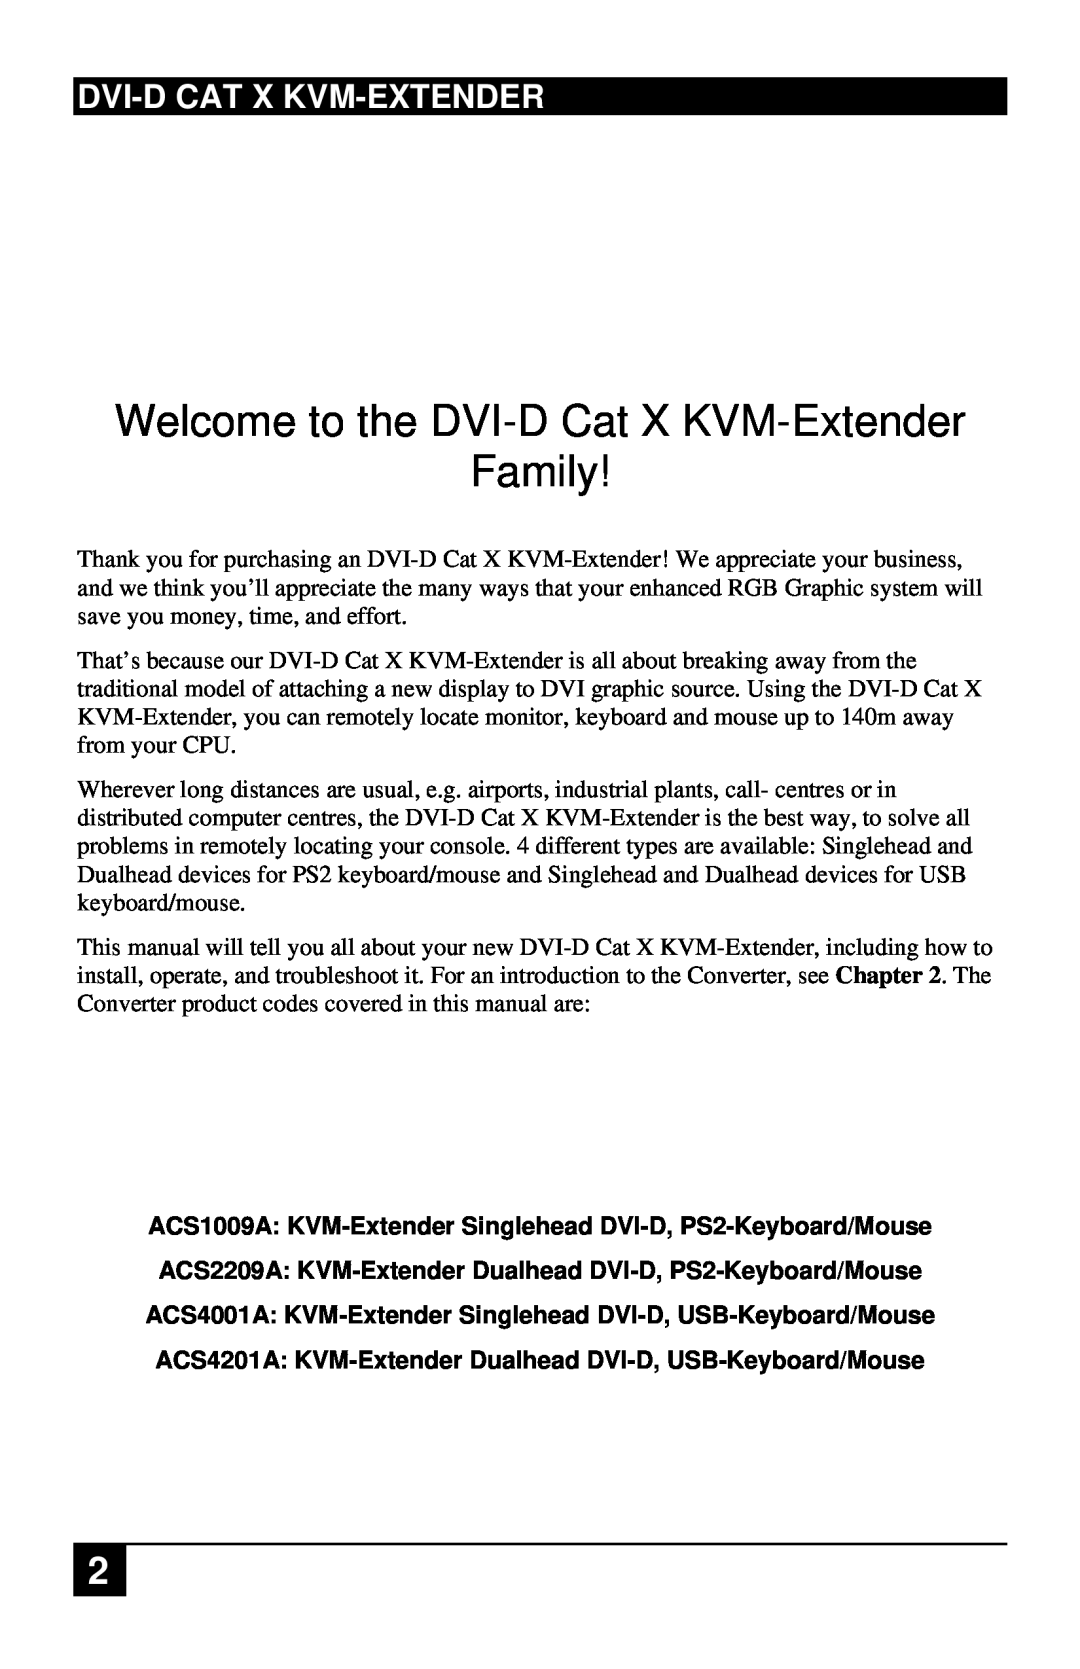 Black Box ACS1009A, ACS4201A manual Dvi-Dcat X Kvm-Extender, Welcome to the DVI-DCat X KVM-Extender Family 